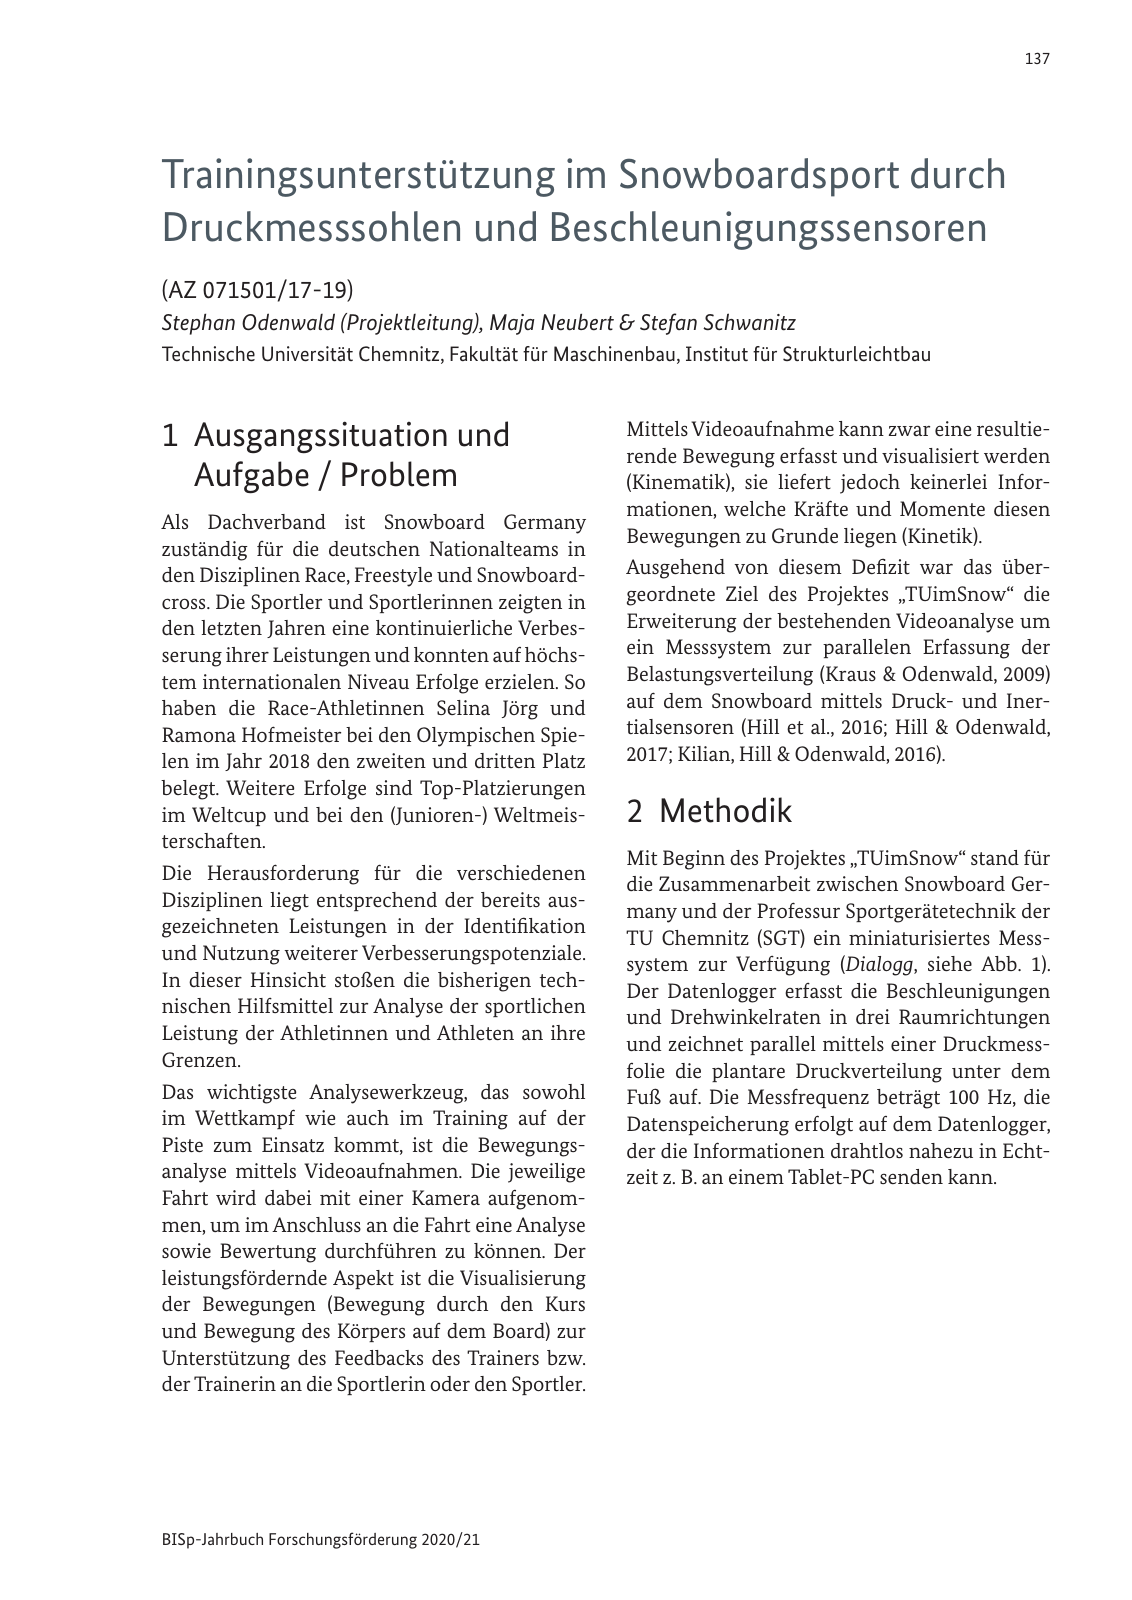 Vorschau BISp-Jahrbuch 2020/21 Seite 139